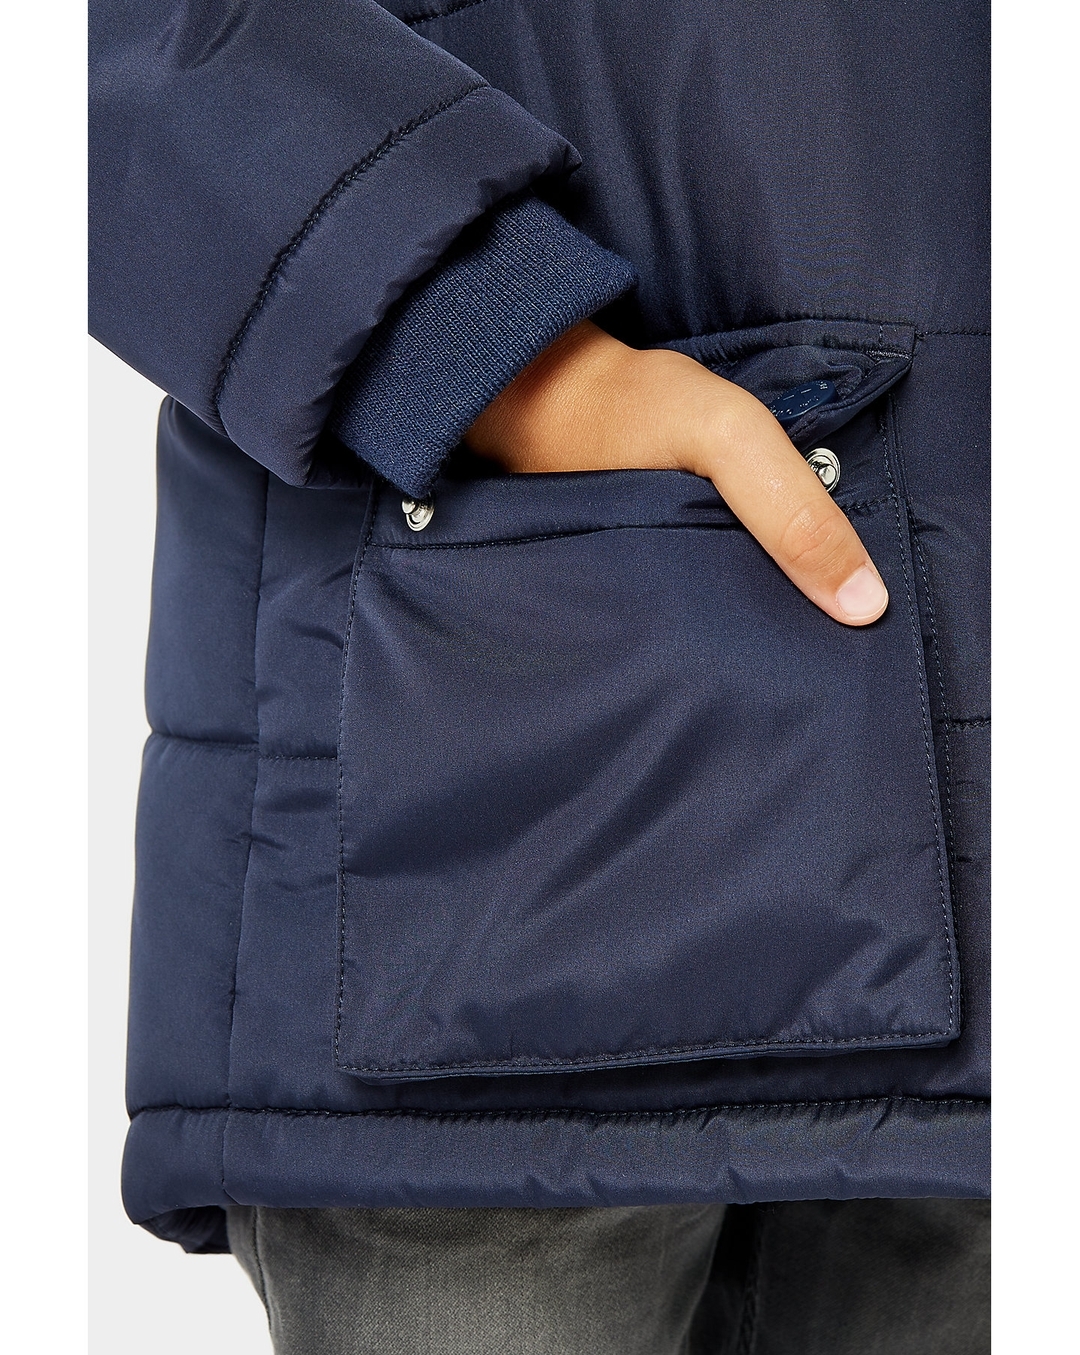 Buy Boys Full Sleeves Jacket Faux Fur Hood-Navy Online at Best Price